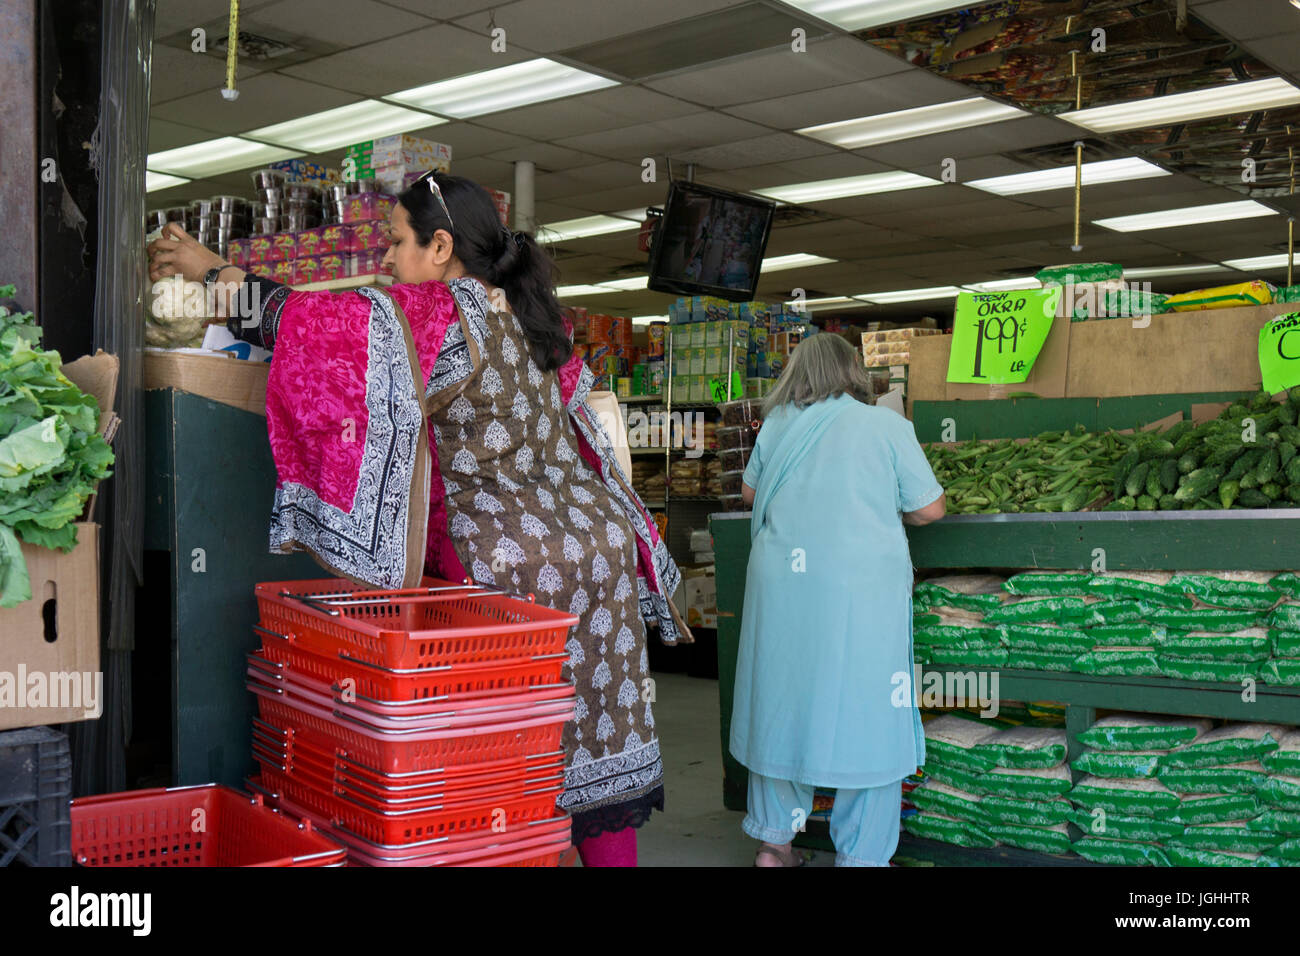 Dos mujeres del sur de Asia en la moda étnica para compras de verduras en un supermercado en 37th Avenue en Jackson Heights, Queens, Ciudad de Nueva York. Foto de stock